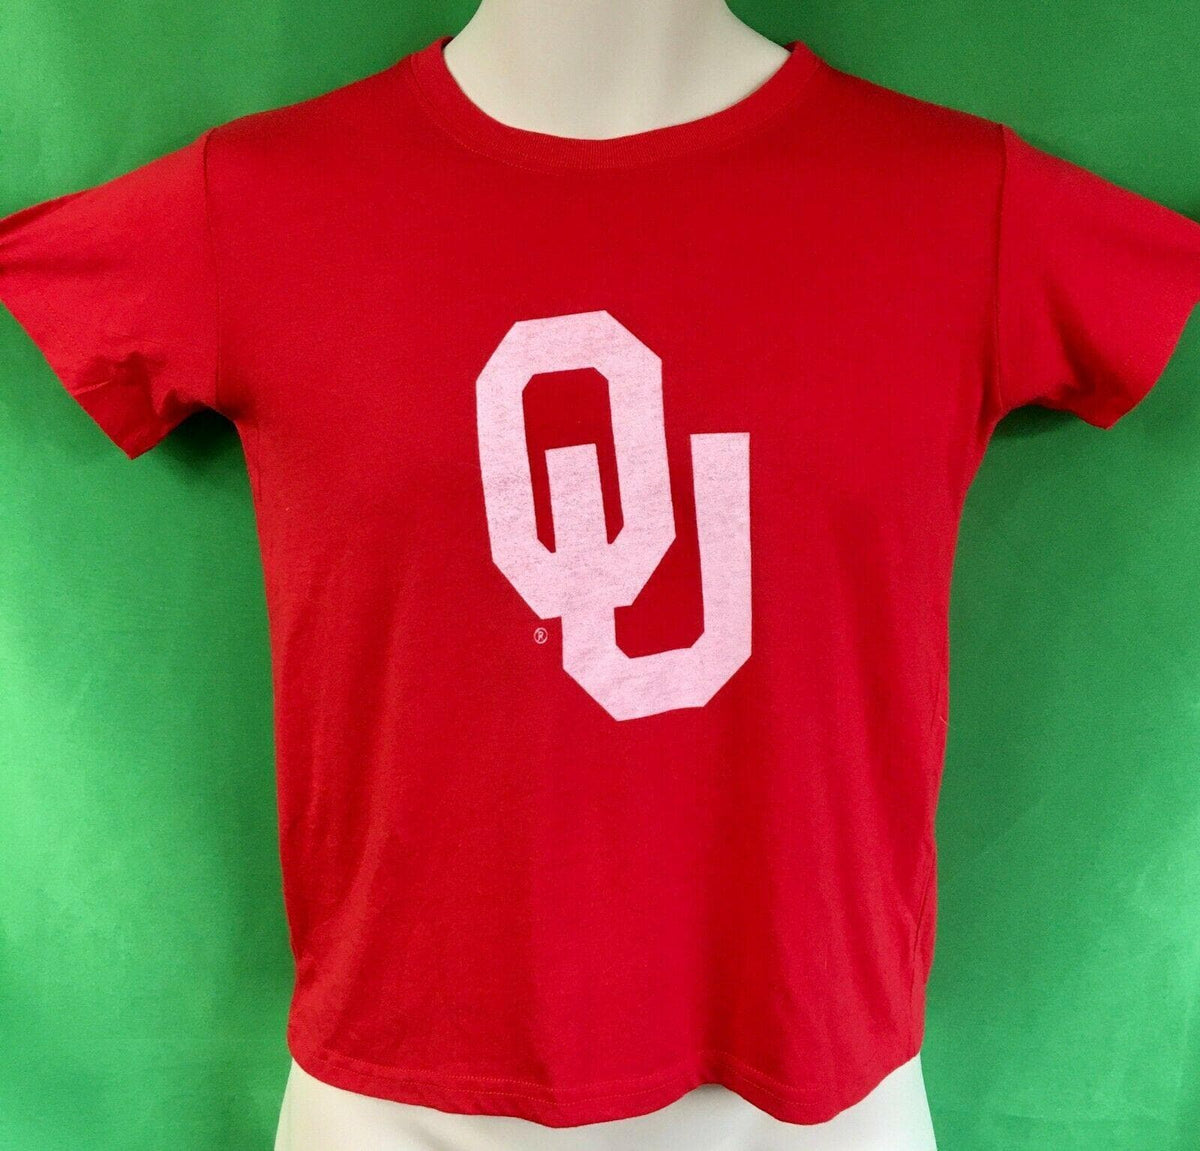 NCAA Oklahoma Sooners T-Shirt Youth Small/Medium 8-10